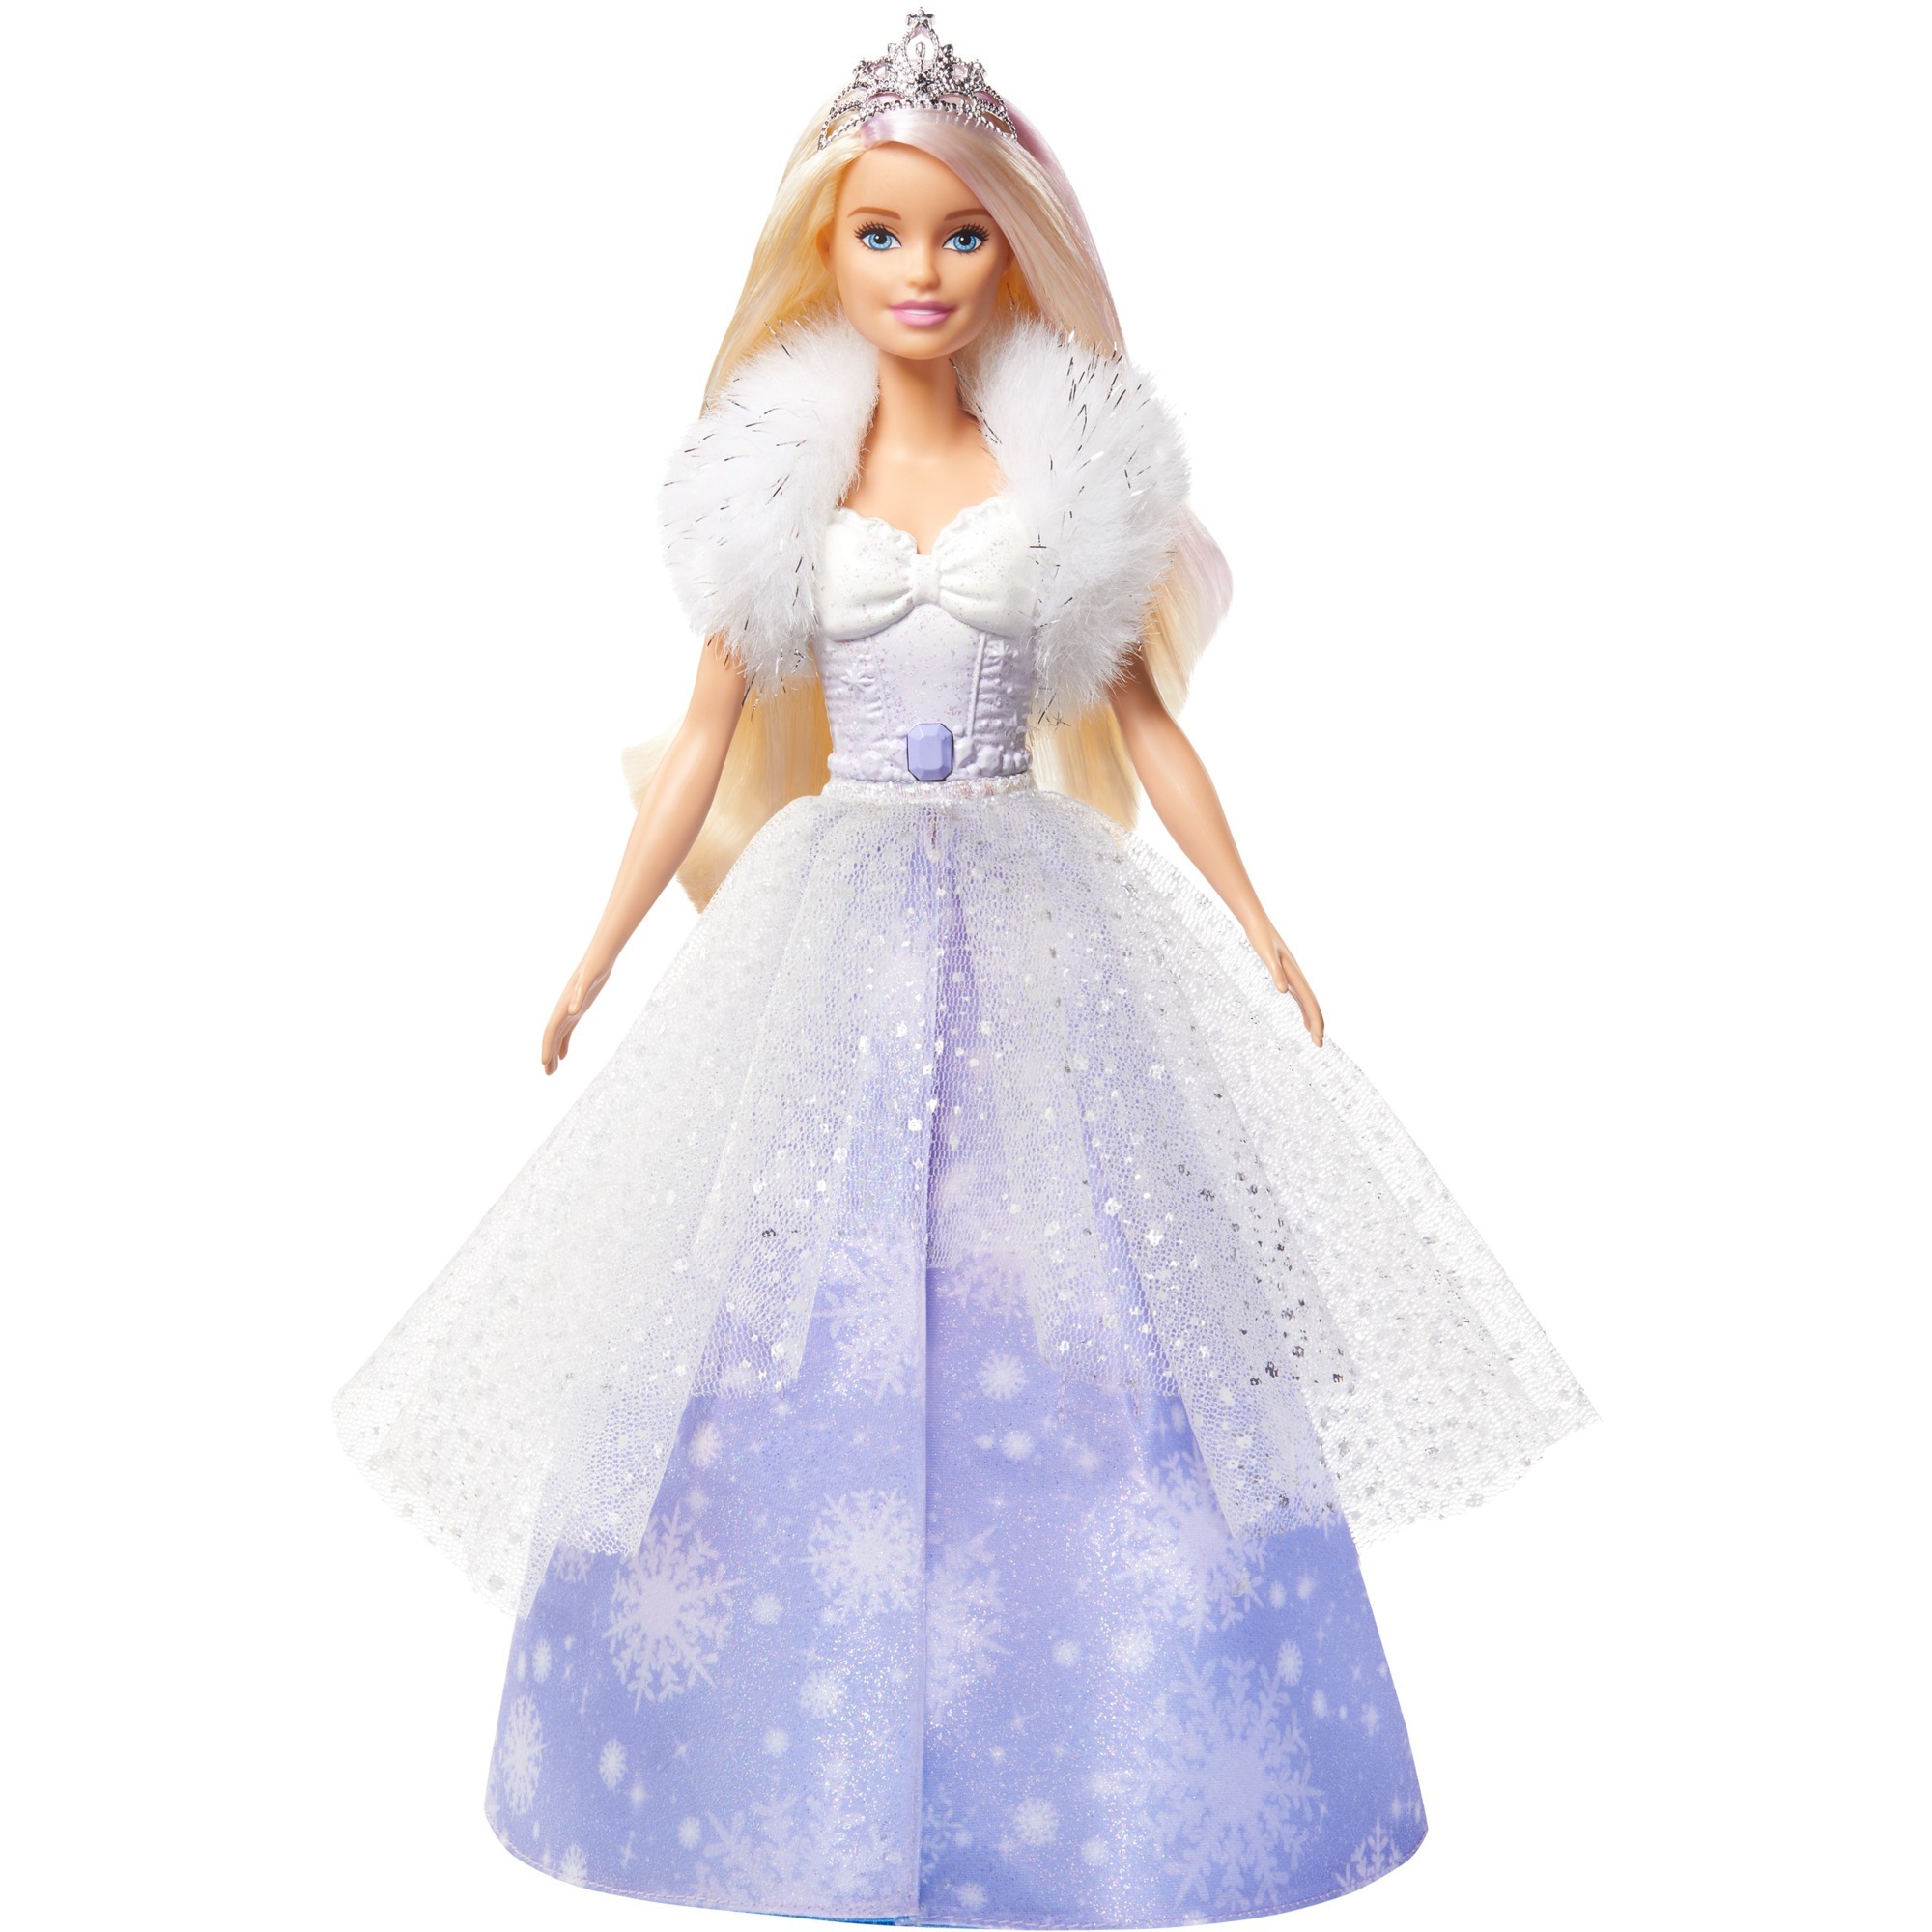 Image of Alternate - Barbie Dreamtopia Schneezauber Prinzessin Puppe online einkaufen bei Alternate